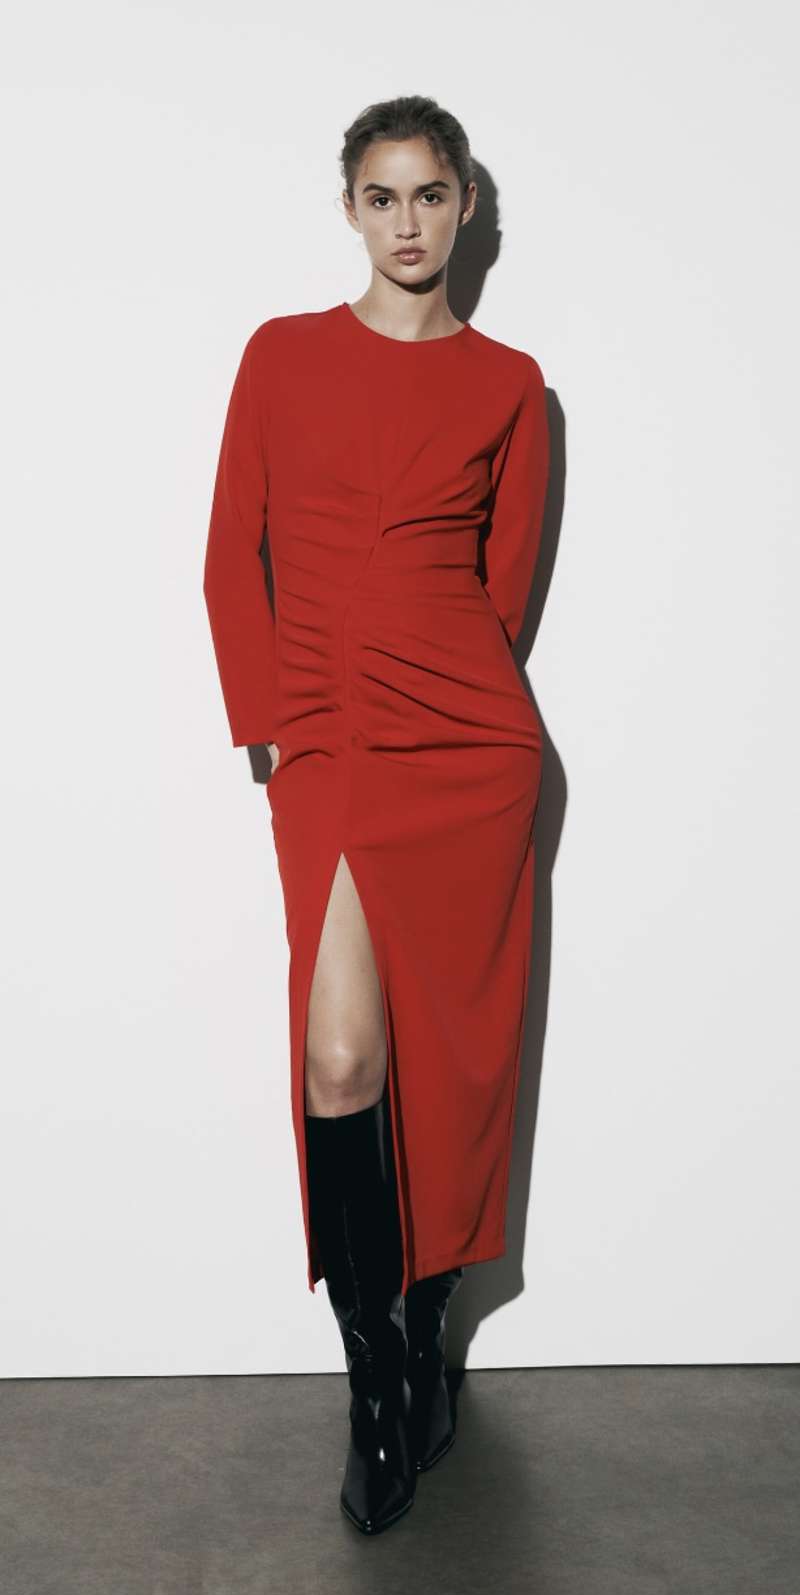 Vestido rojo Zara